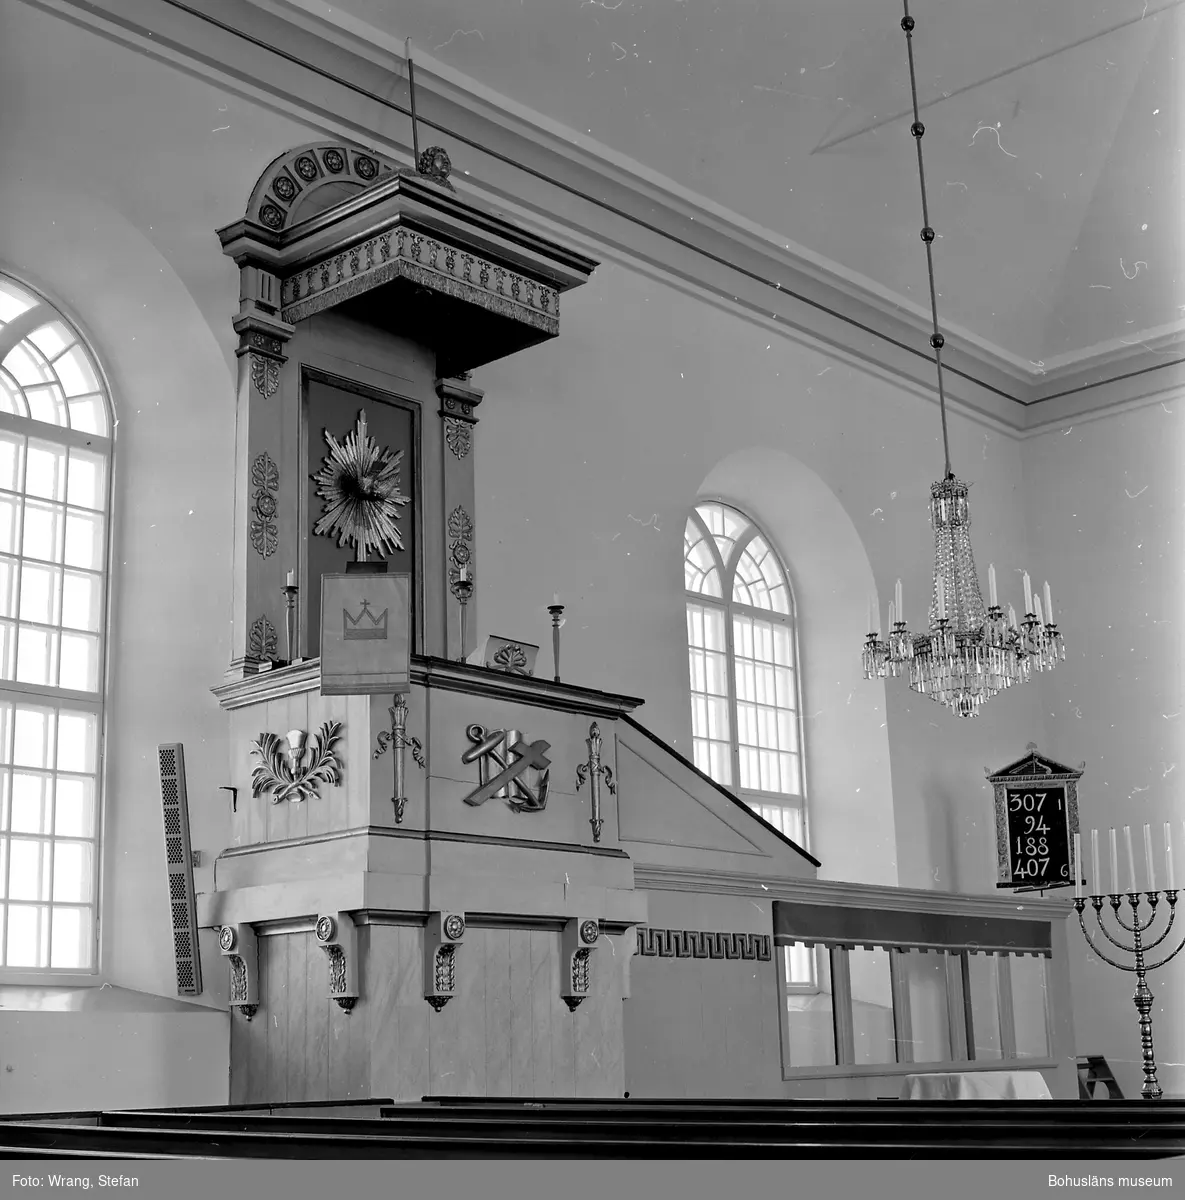 Text till bilden: "Tanums kyrka. Predikstolen, 1854".